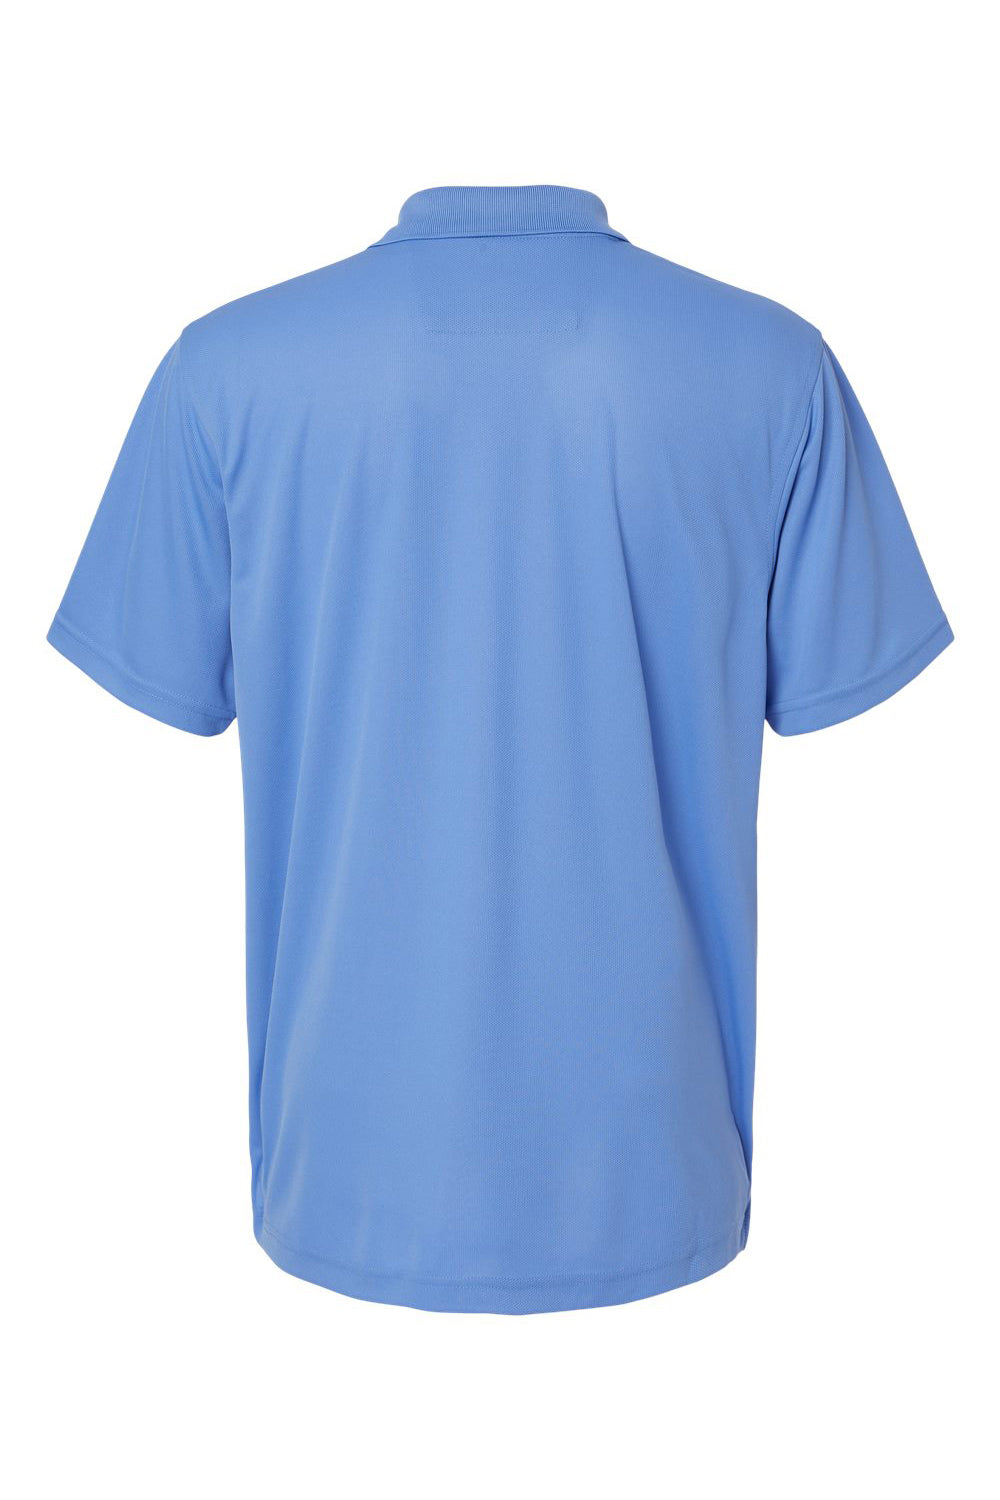 Paragon 100 Mens Saratoga Performance Mini Mesh Short Sleeve Polo Shirt Bimini Blue Flat Back